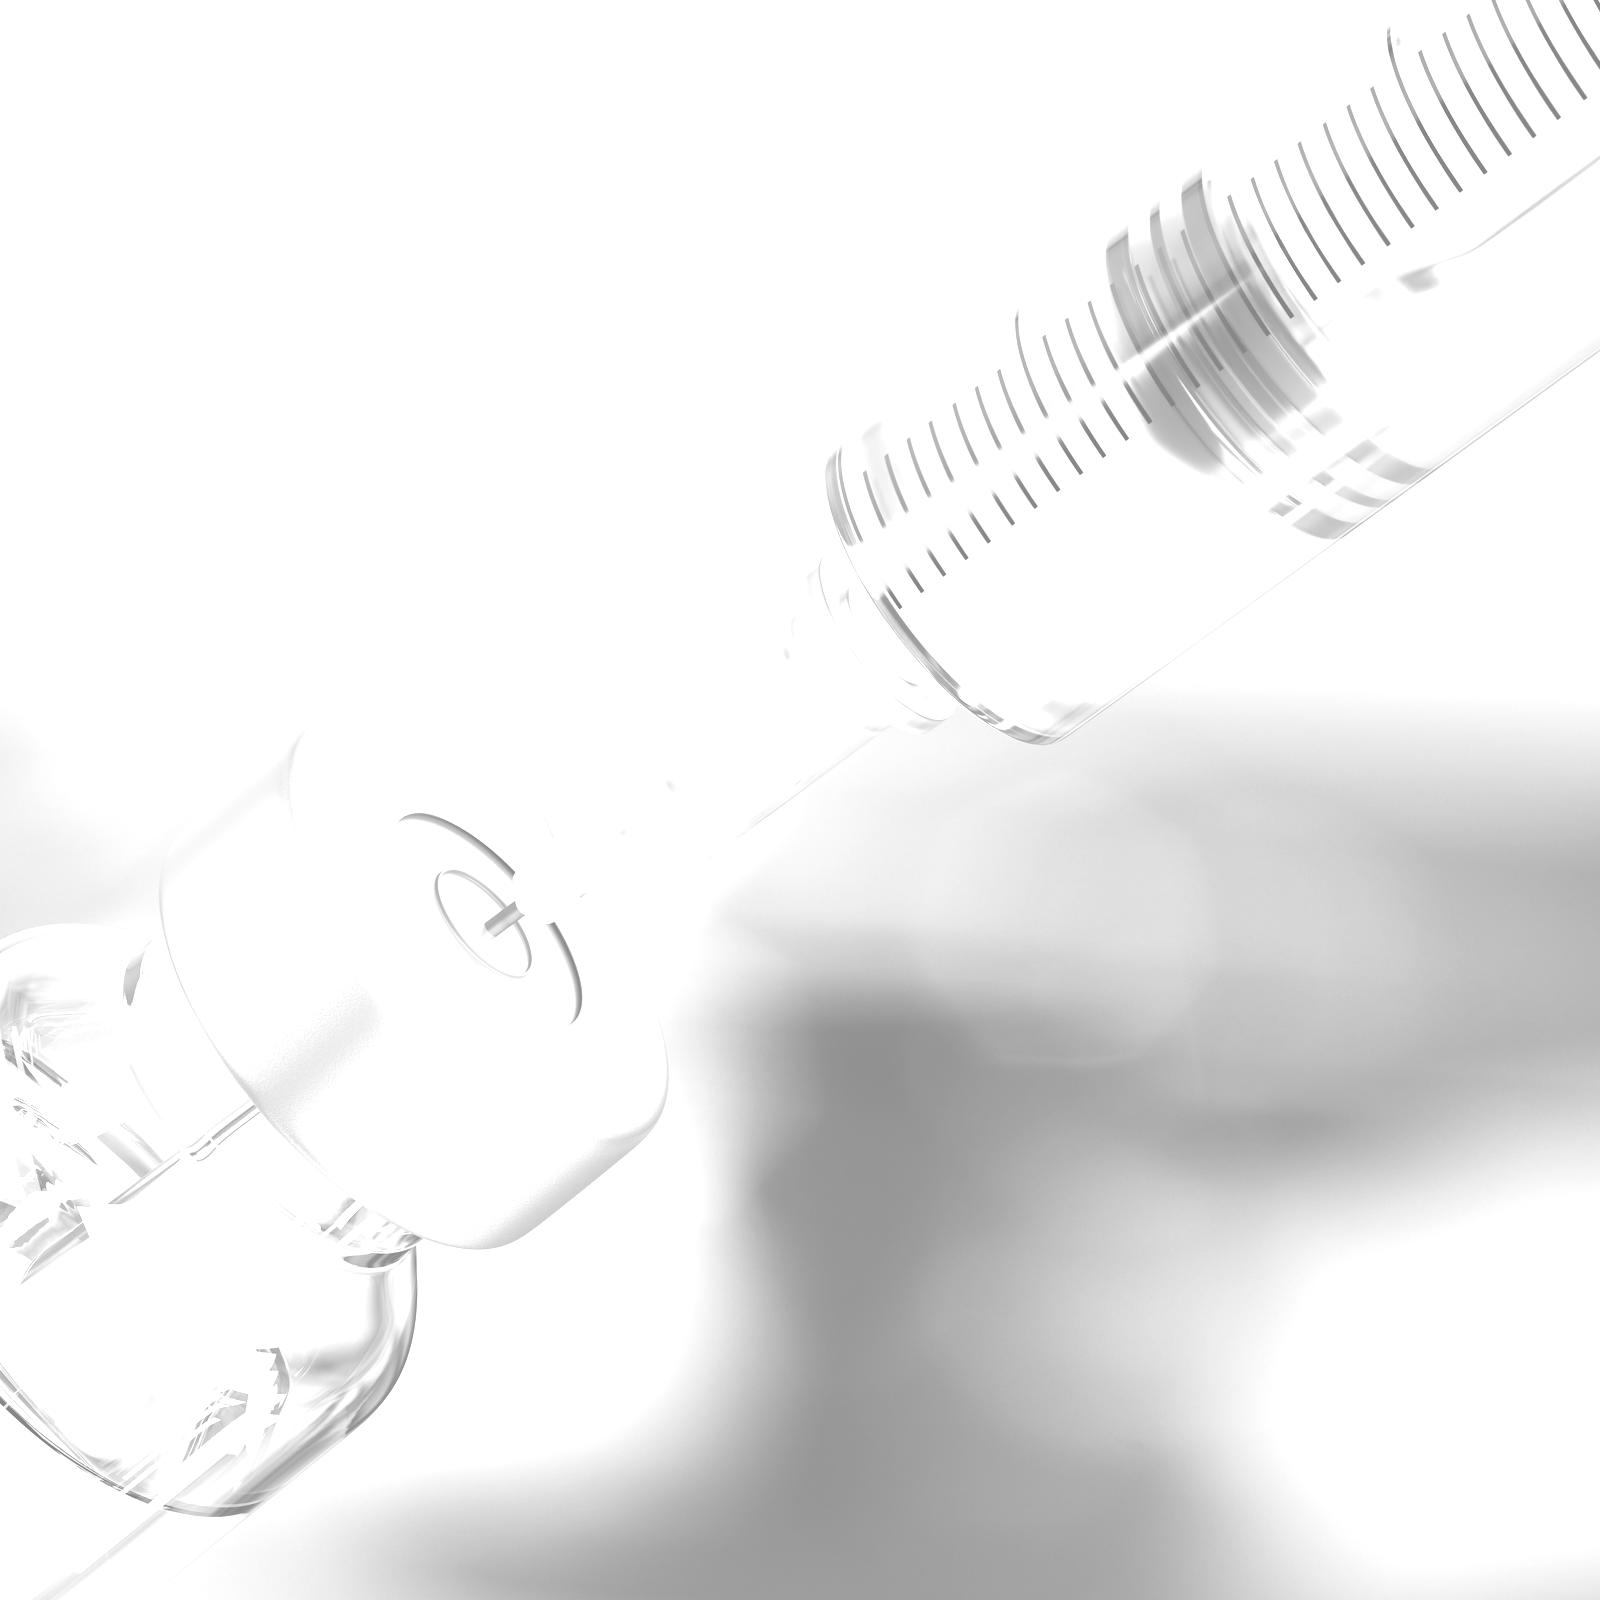 Filling a syringe